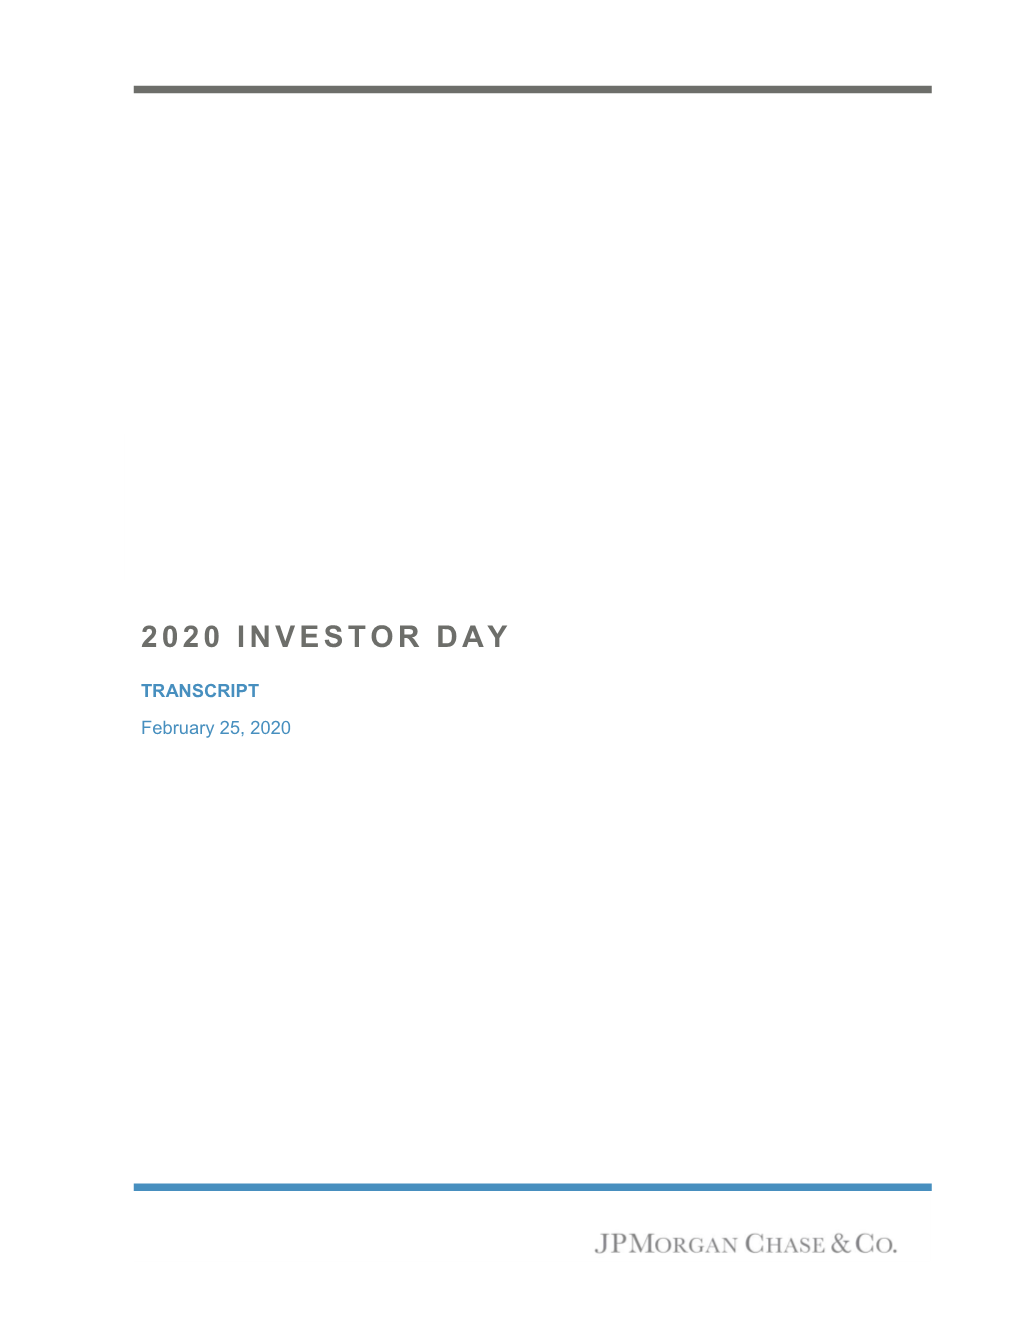 2020 Investor Day Transcript